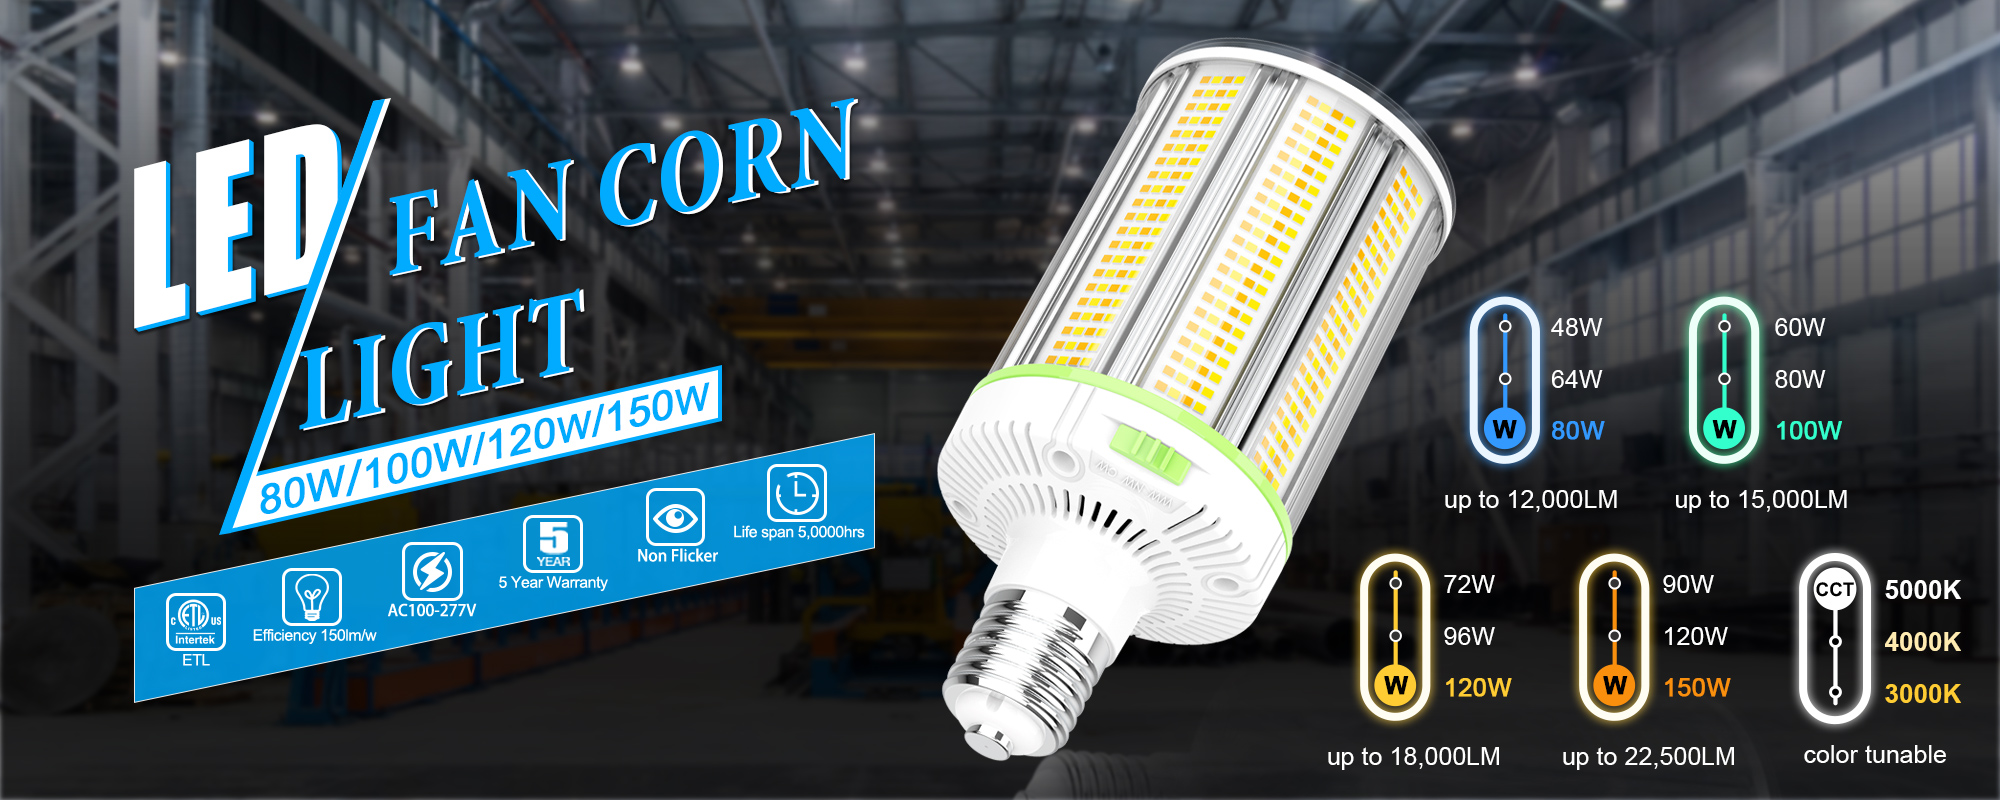 LED Corn Light